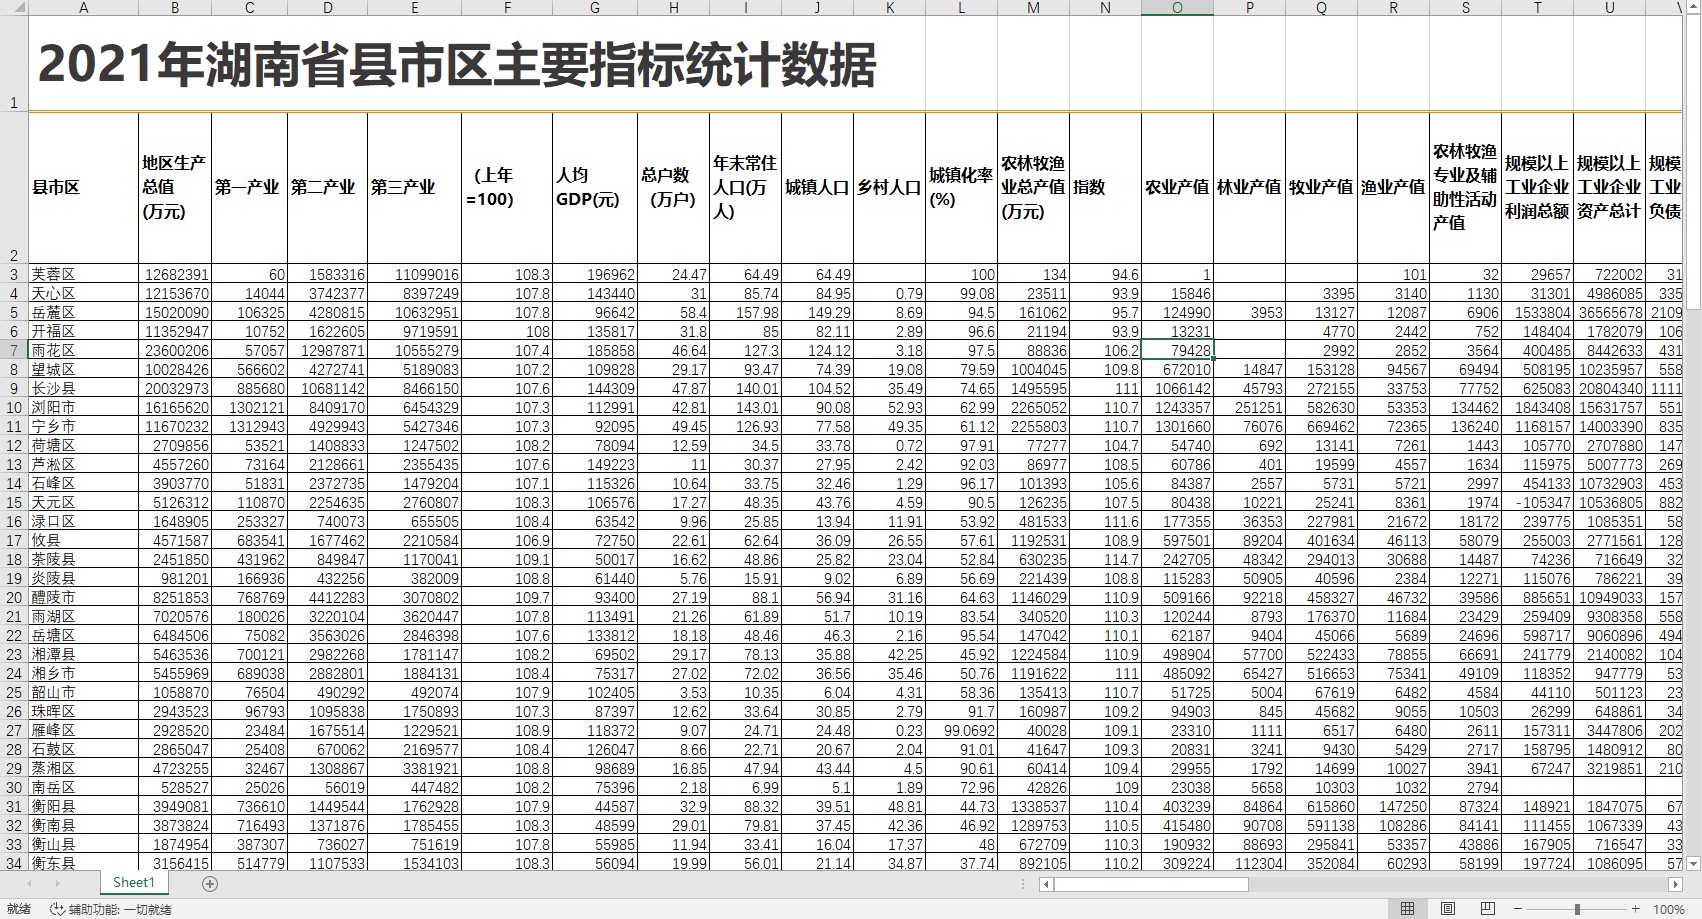 2021年湖南省县市区主要指标统计数据